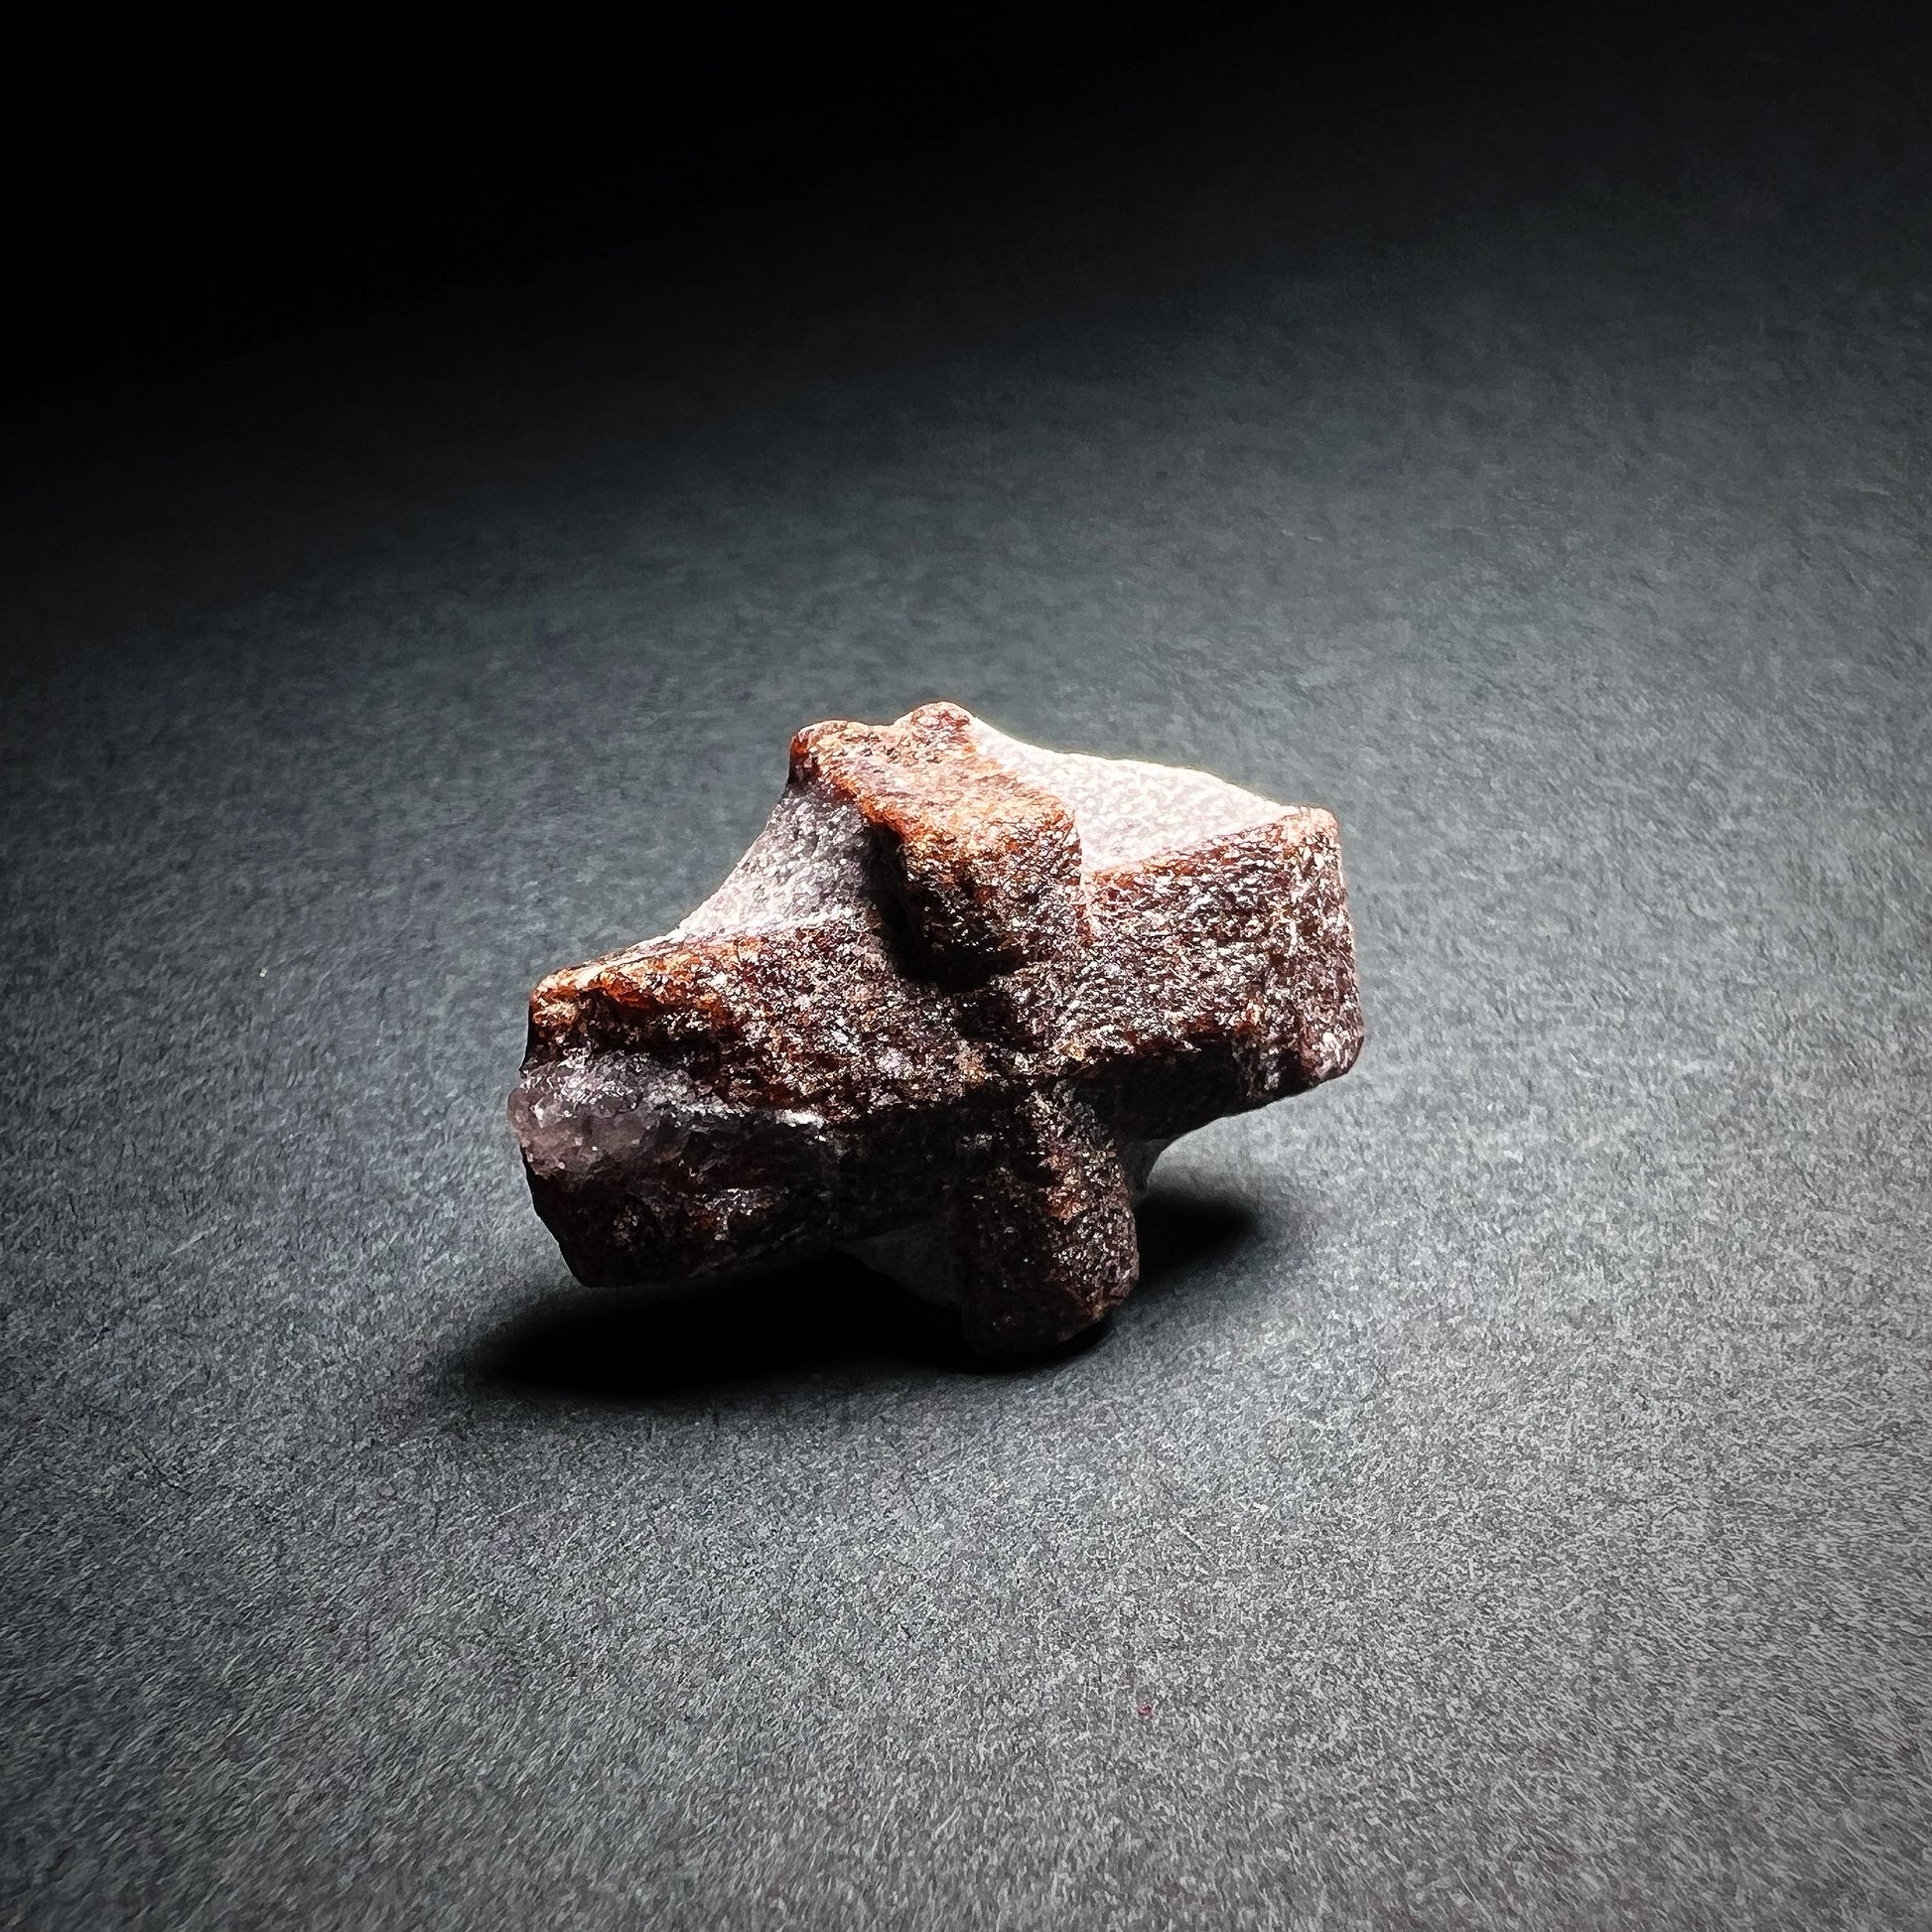 Stauroliitti kristalli jossa selkeästi erottuva ristimuodostelma - Staurolite crystal with cross shape